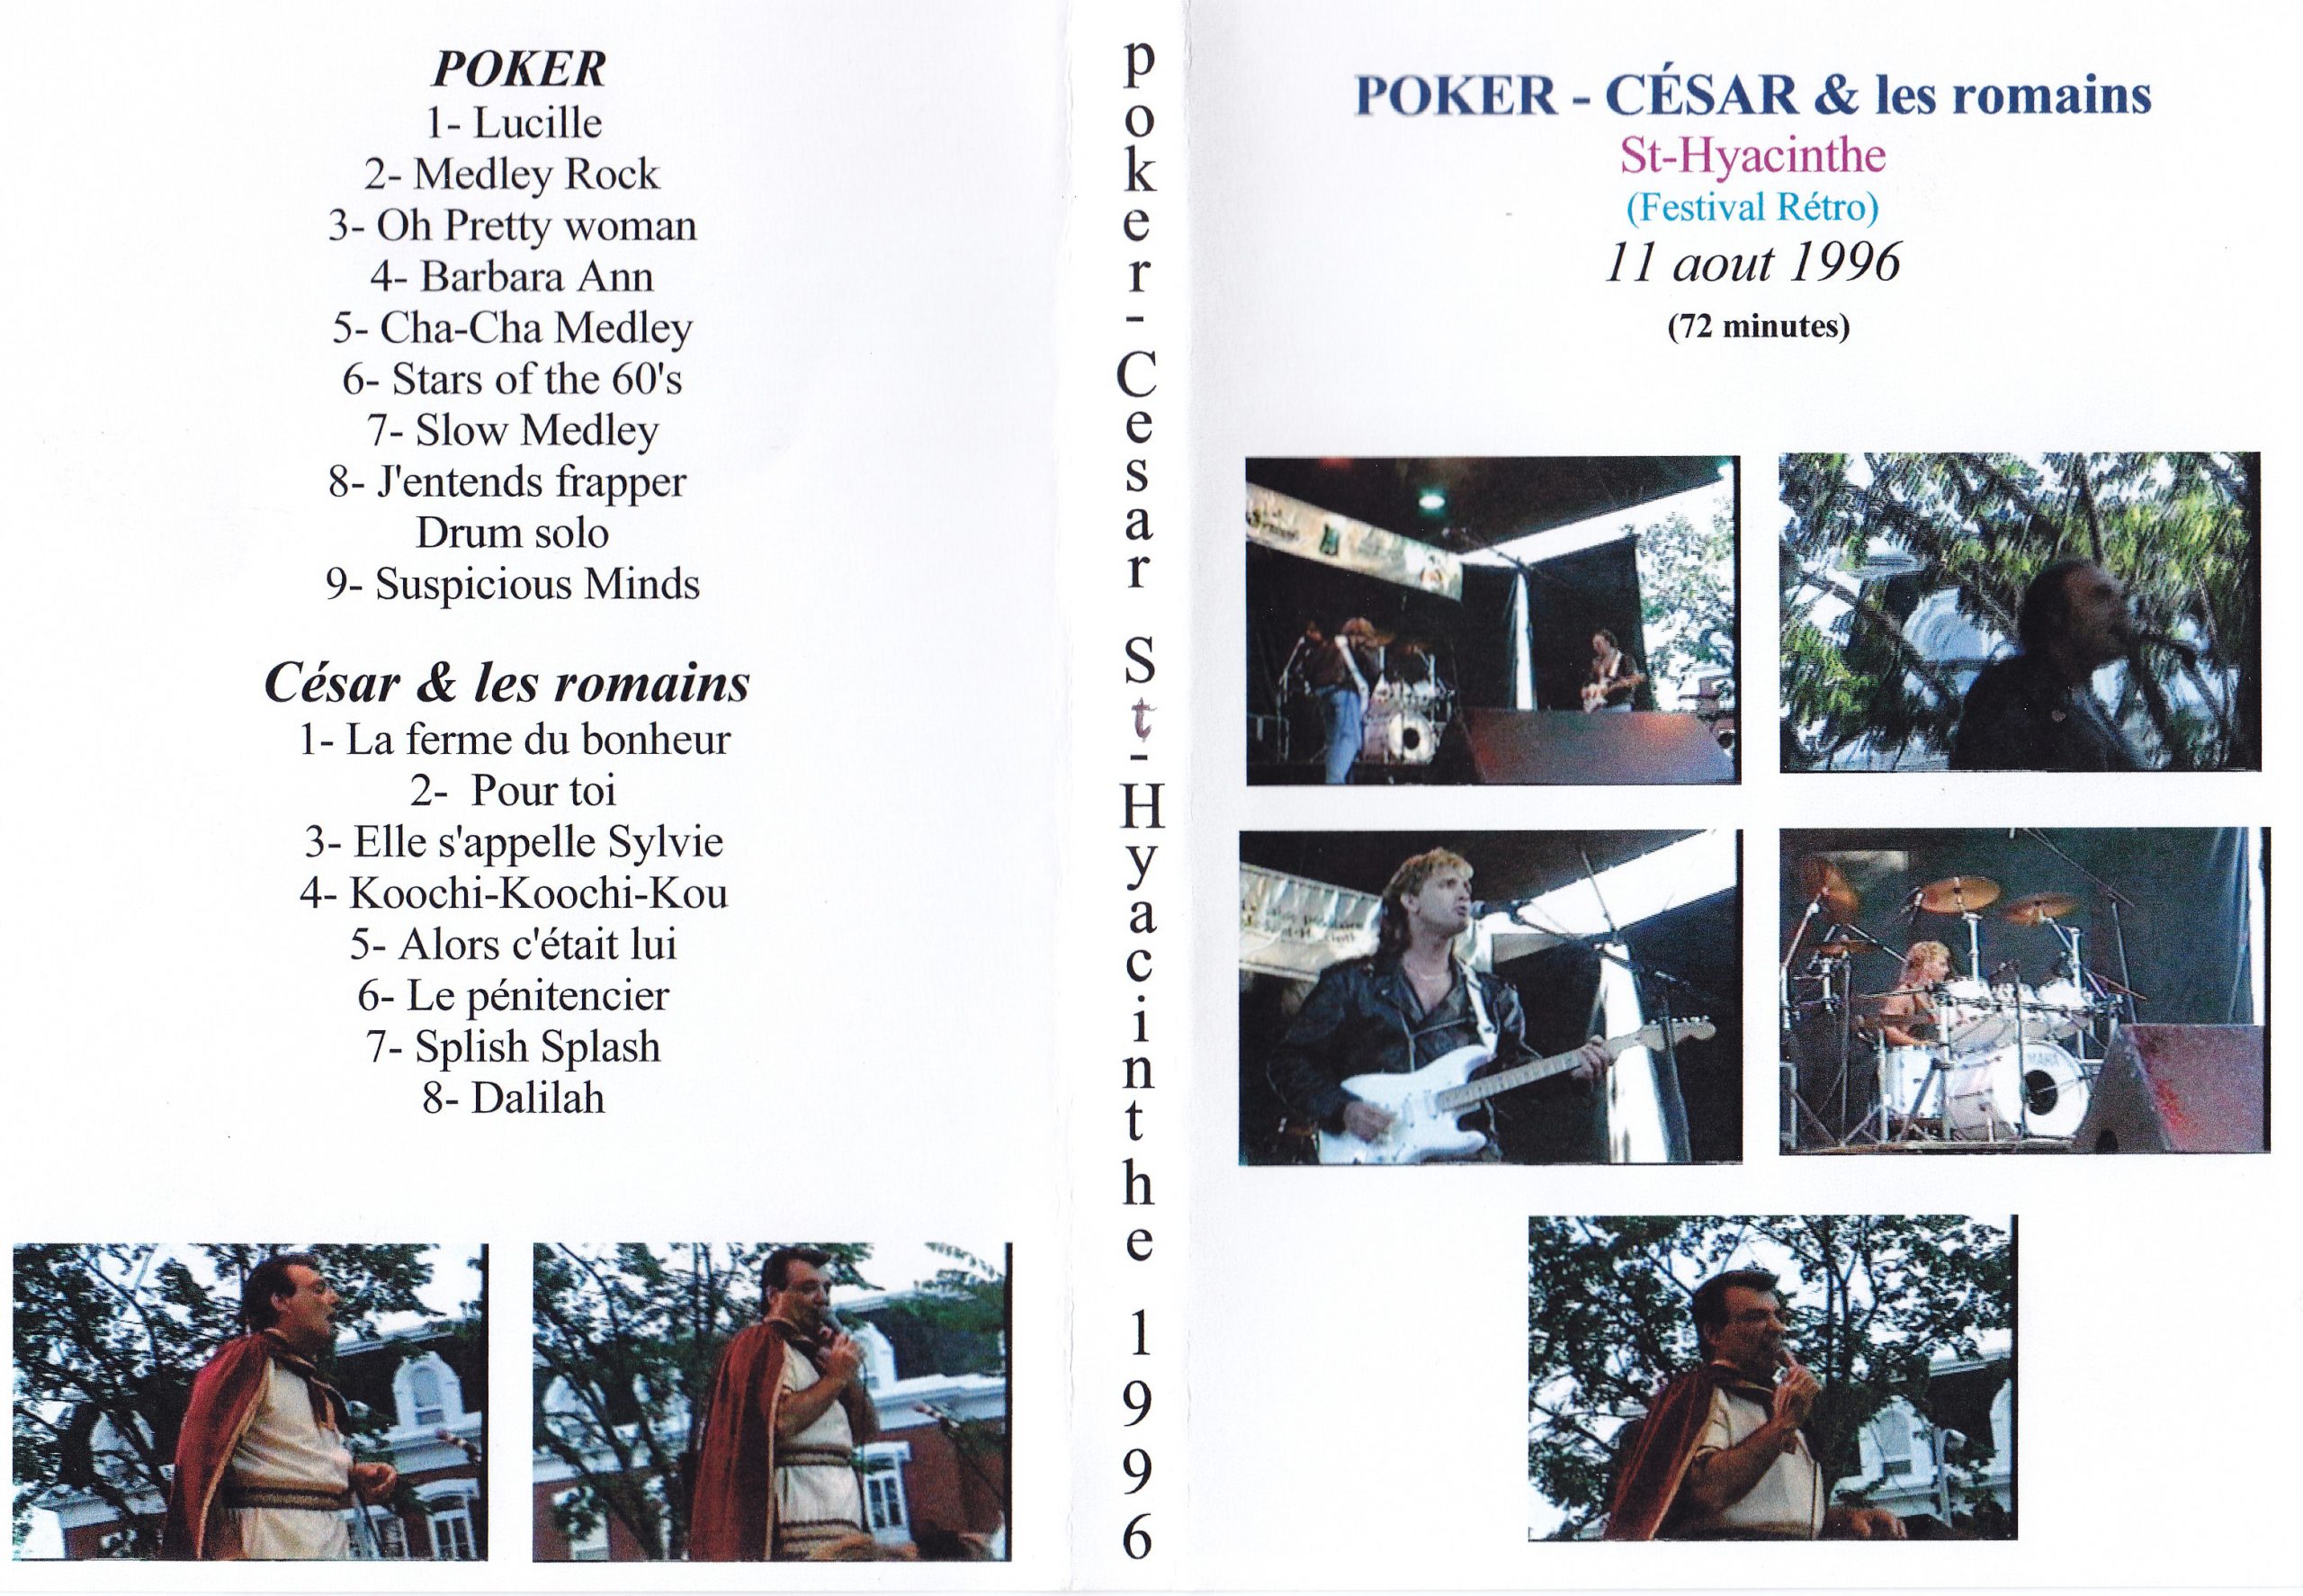 1996-poker-cesar-romain-st-hyacinthe